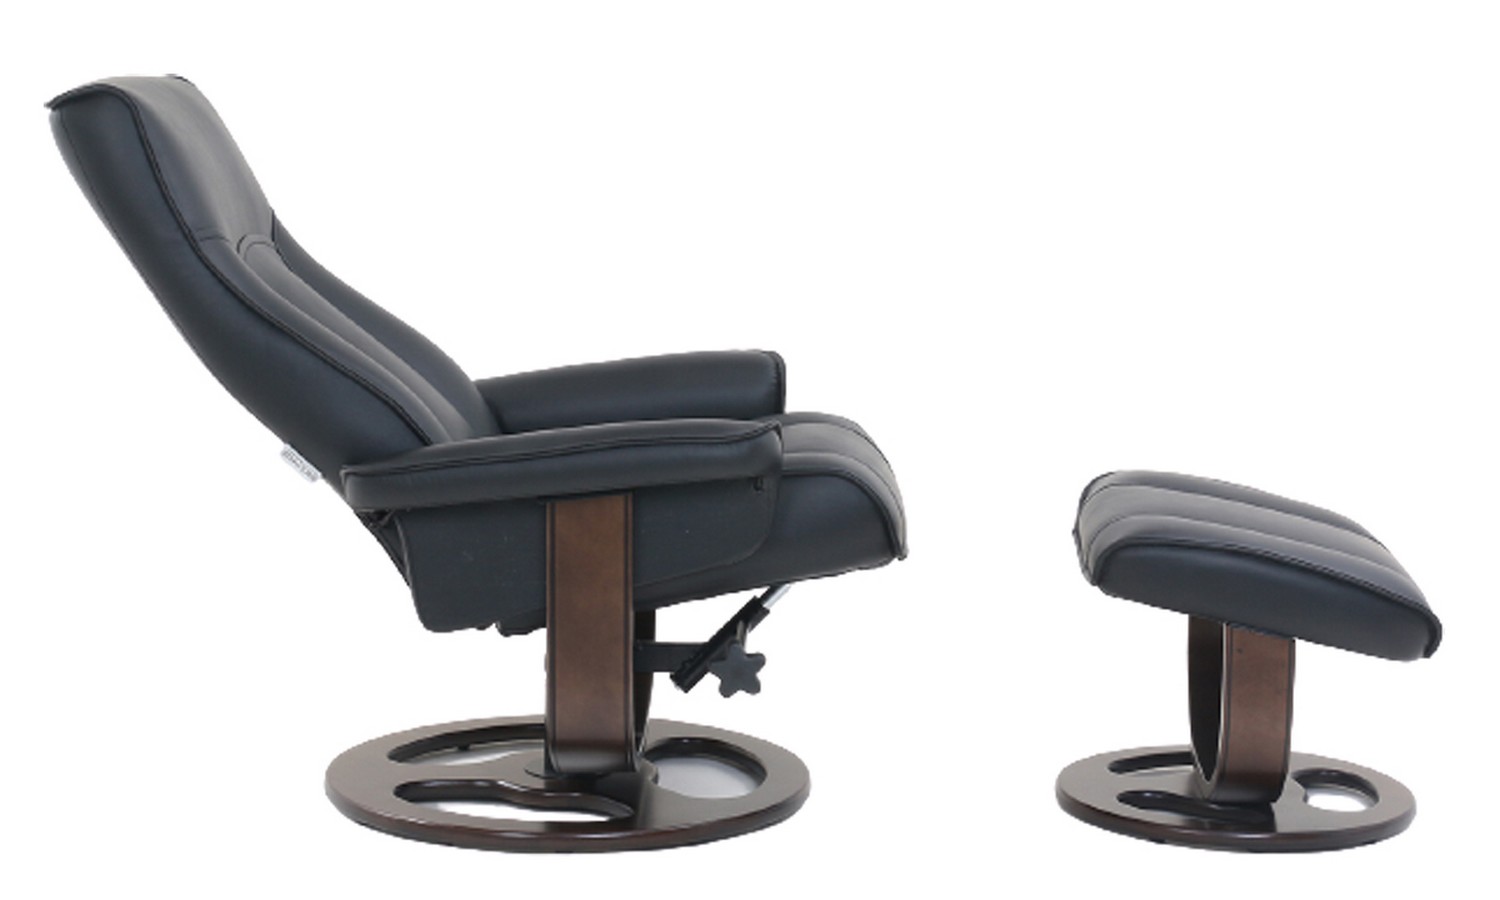 Barcalounger Austin Pedestal Recliner Chair/Ottoman - Hilton Black/Leather Match